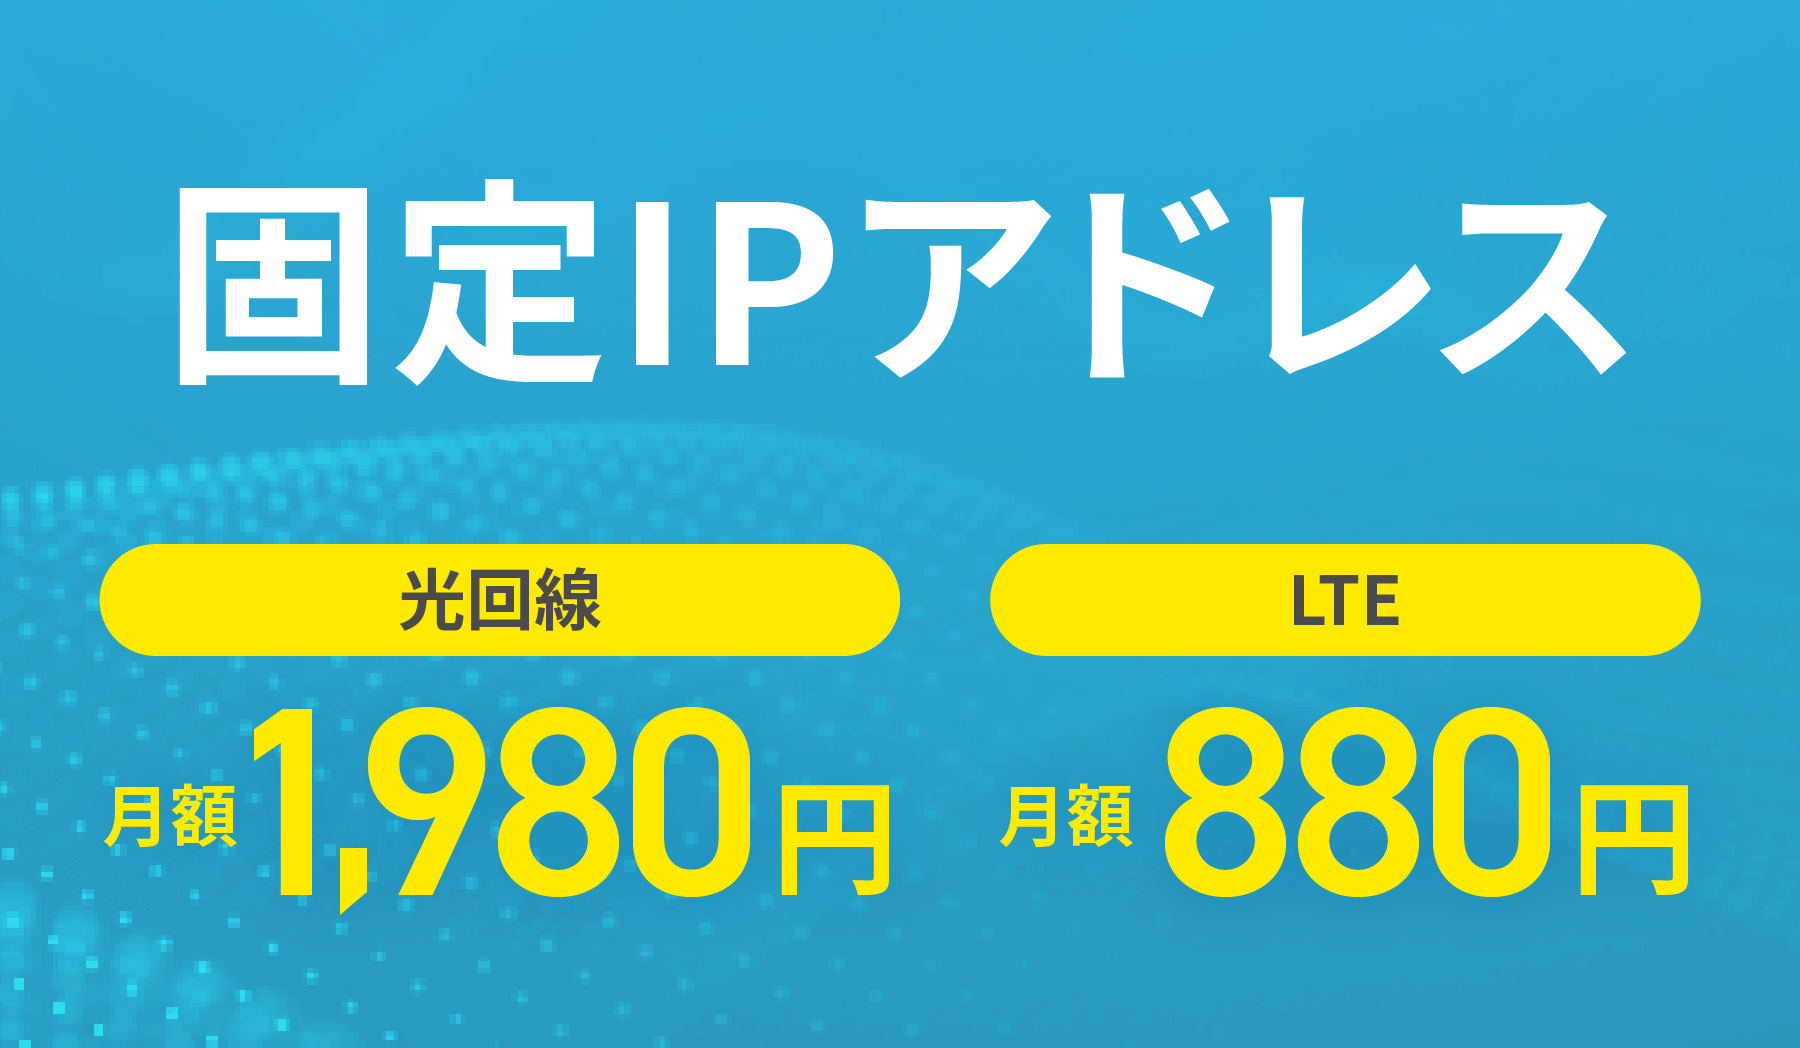 固定IPアドレス 光回線月額1,980円 LTE月額880円